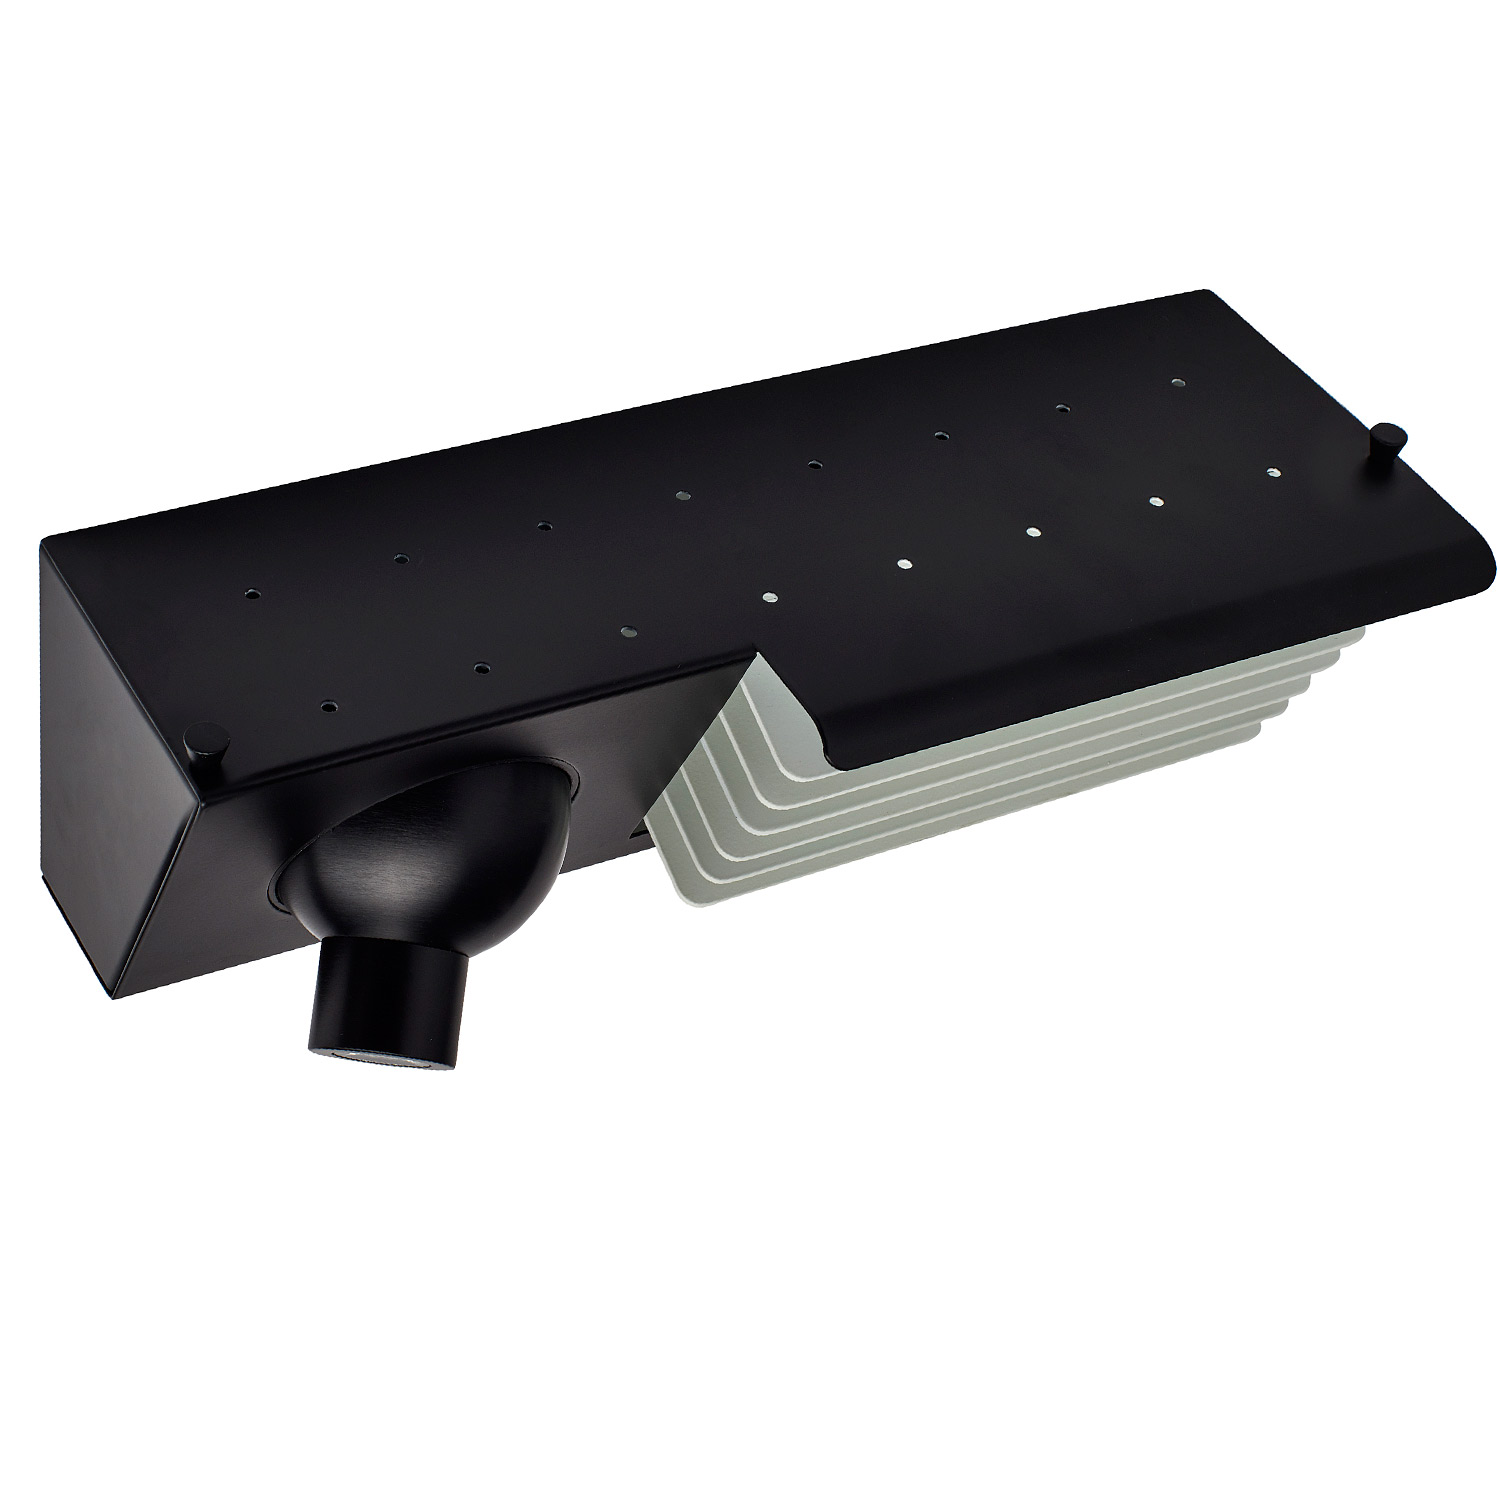 Bett-Wandleuchte mit Lese-Spot und USB, schwarz/weiß BINY BEDSIDE: Die Gehäuse-Oberseite hat kleine Löcher, die ein reizvolles Lichtspiel erzeugen (schwarz-weiß, Ausführung rechts)